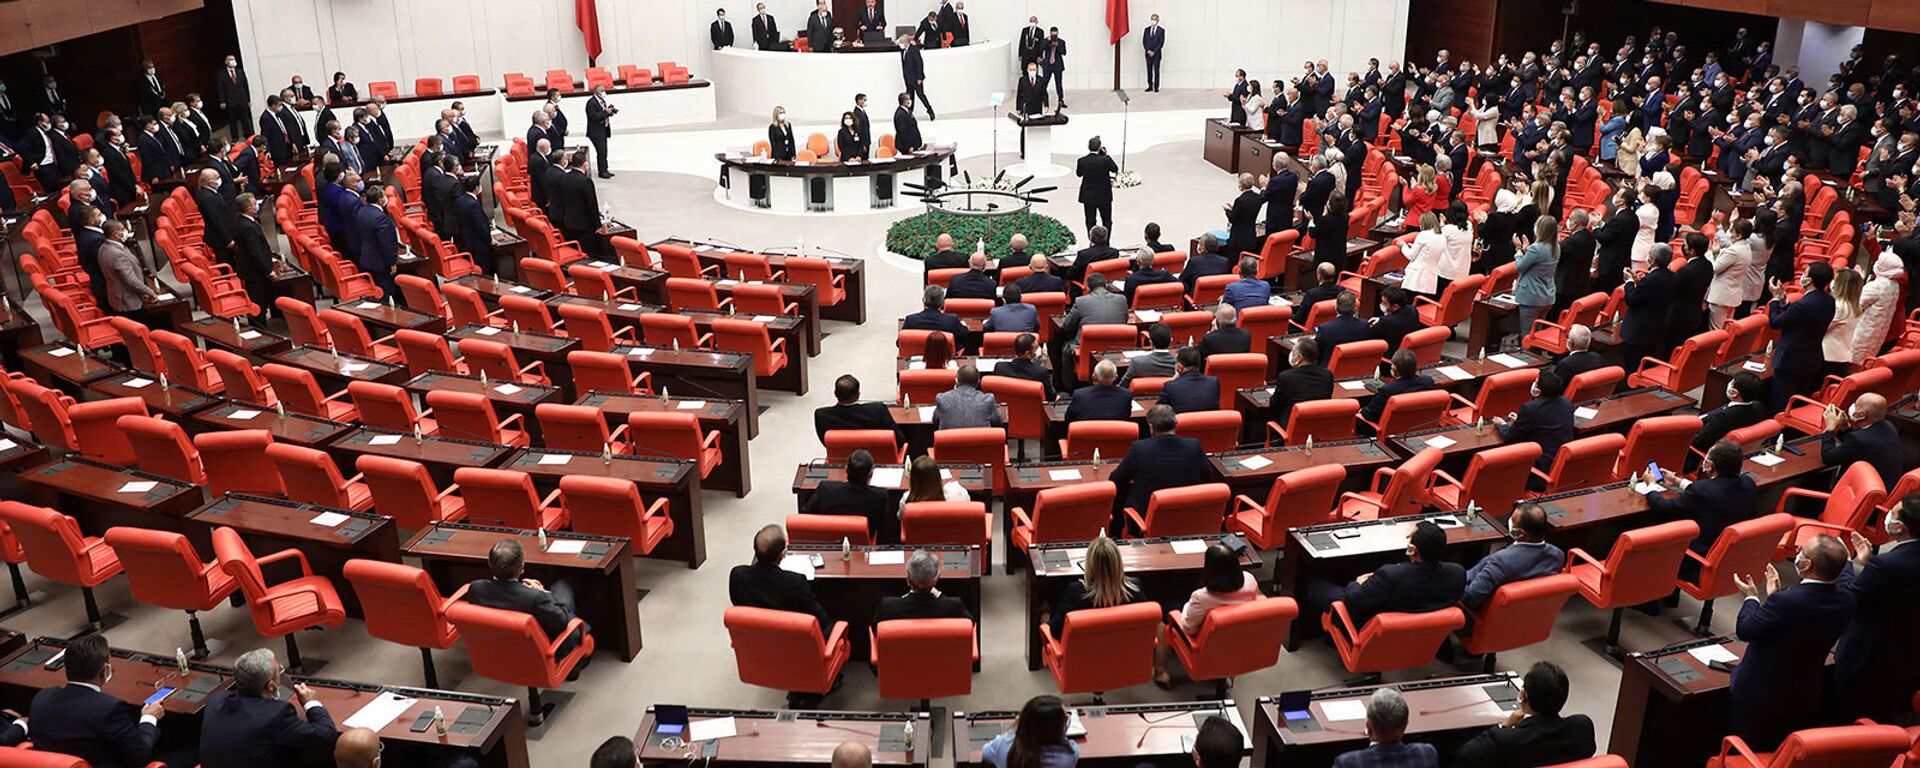 Заседание четвертой законодательной сессии турецкого парламента (1 октября 2020). Анкара - Sputnik Армения, 1920, 25.08.2021